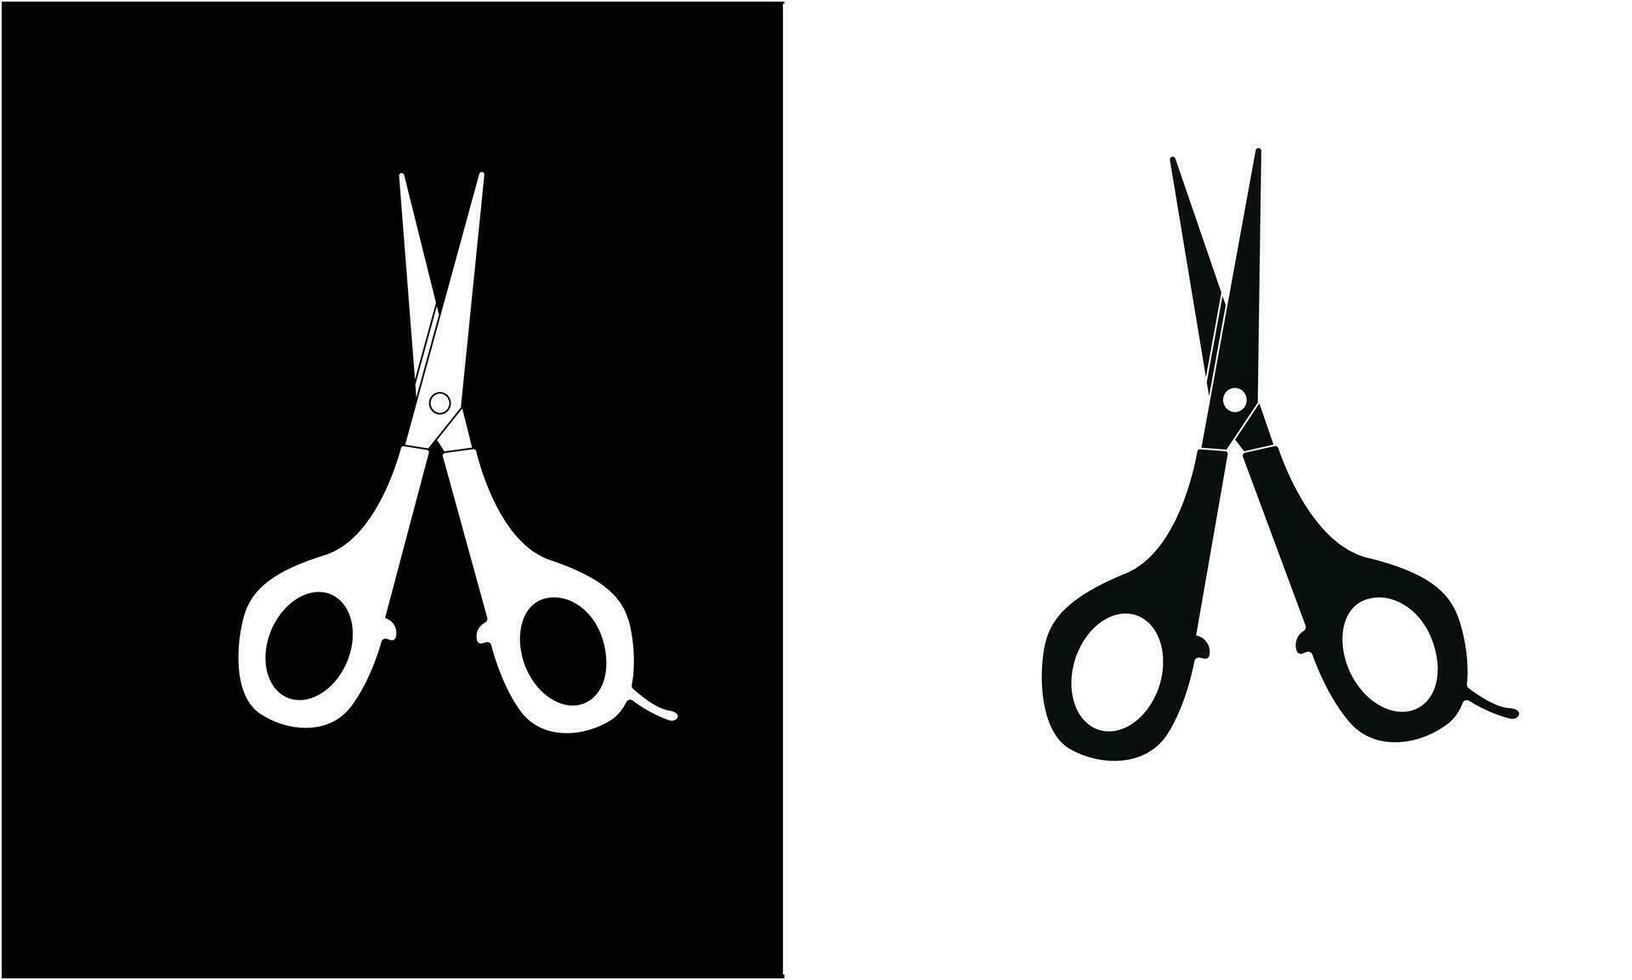 Schere Symbol Vektor Illustration isoliert auf schwarz und Weiß Hintergrund. Werkzeug zum Schneiden oder Handarbeit, handgemacht arbeiten. Schule Konzept.